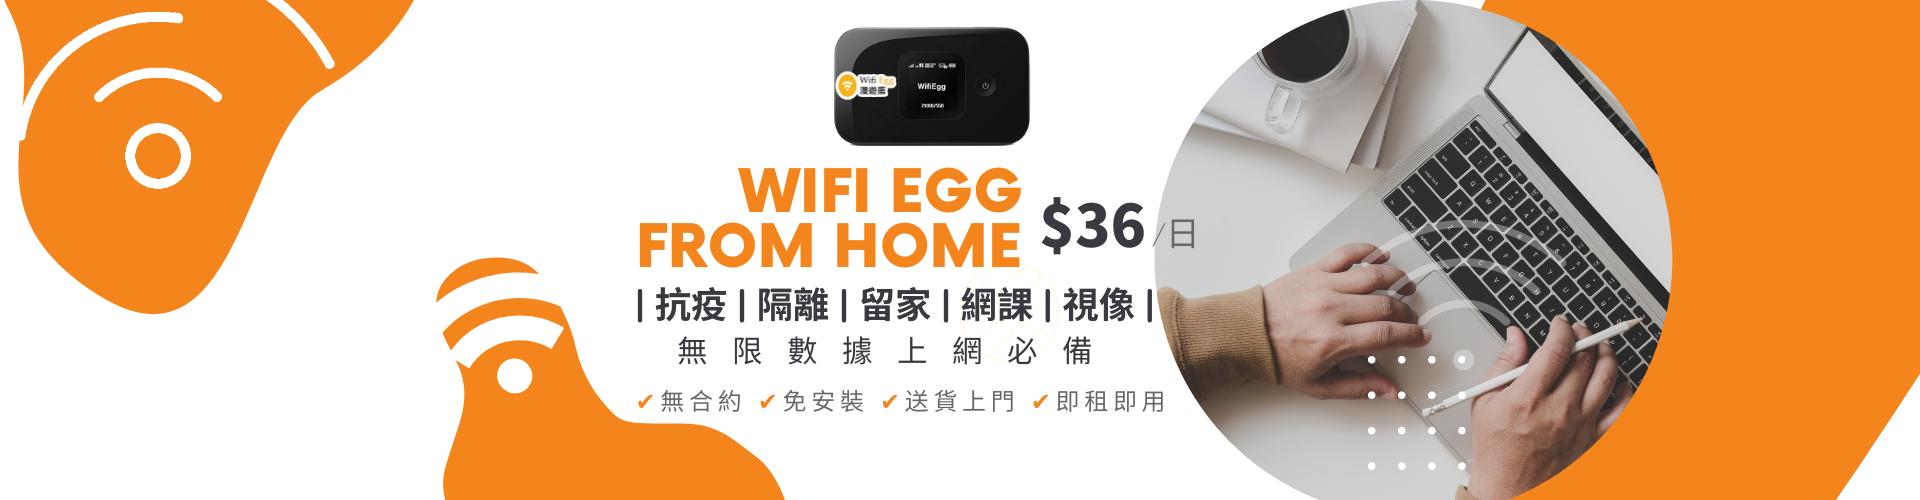 01. HK wifi